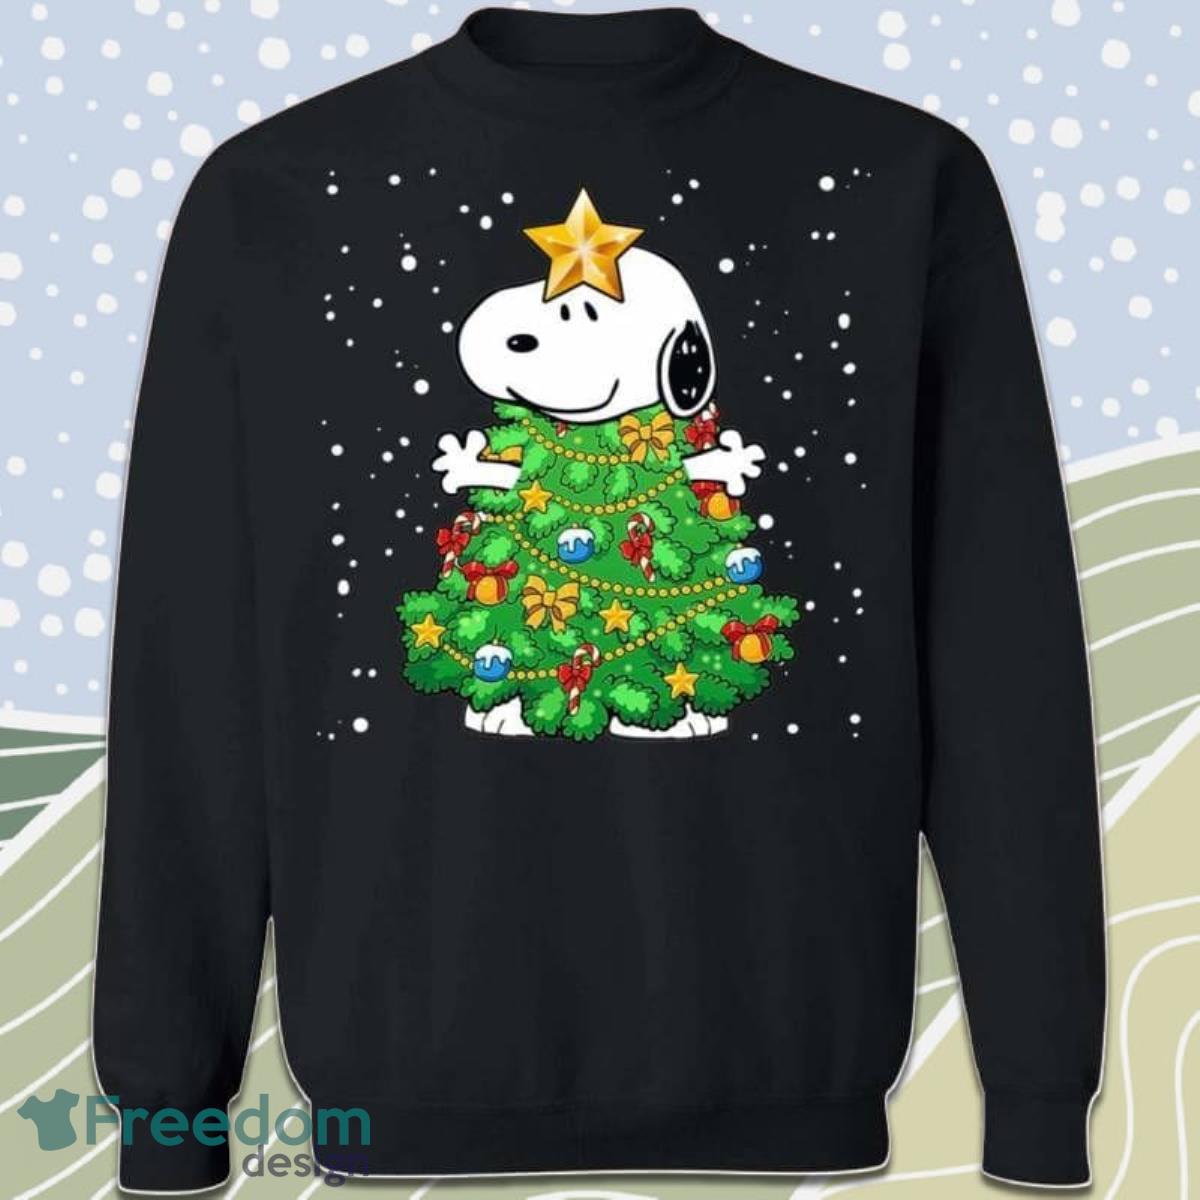 Snoopy Christmas Tree Cosplay Sweatshirt Xmas Gift Product Photo 1